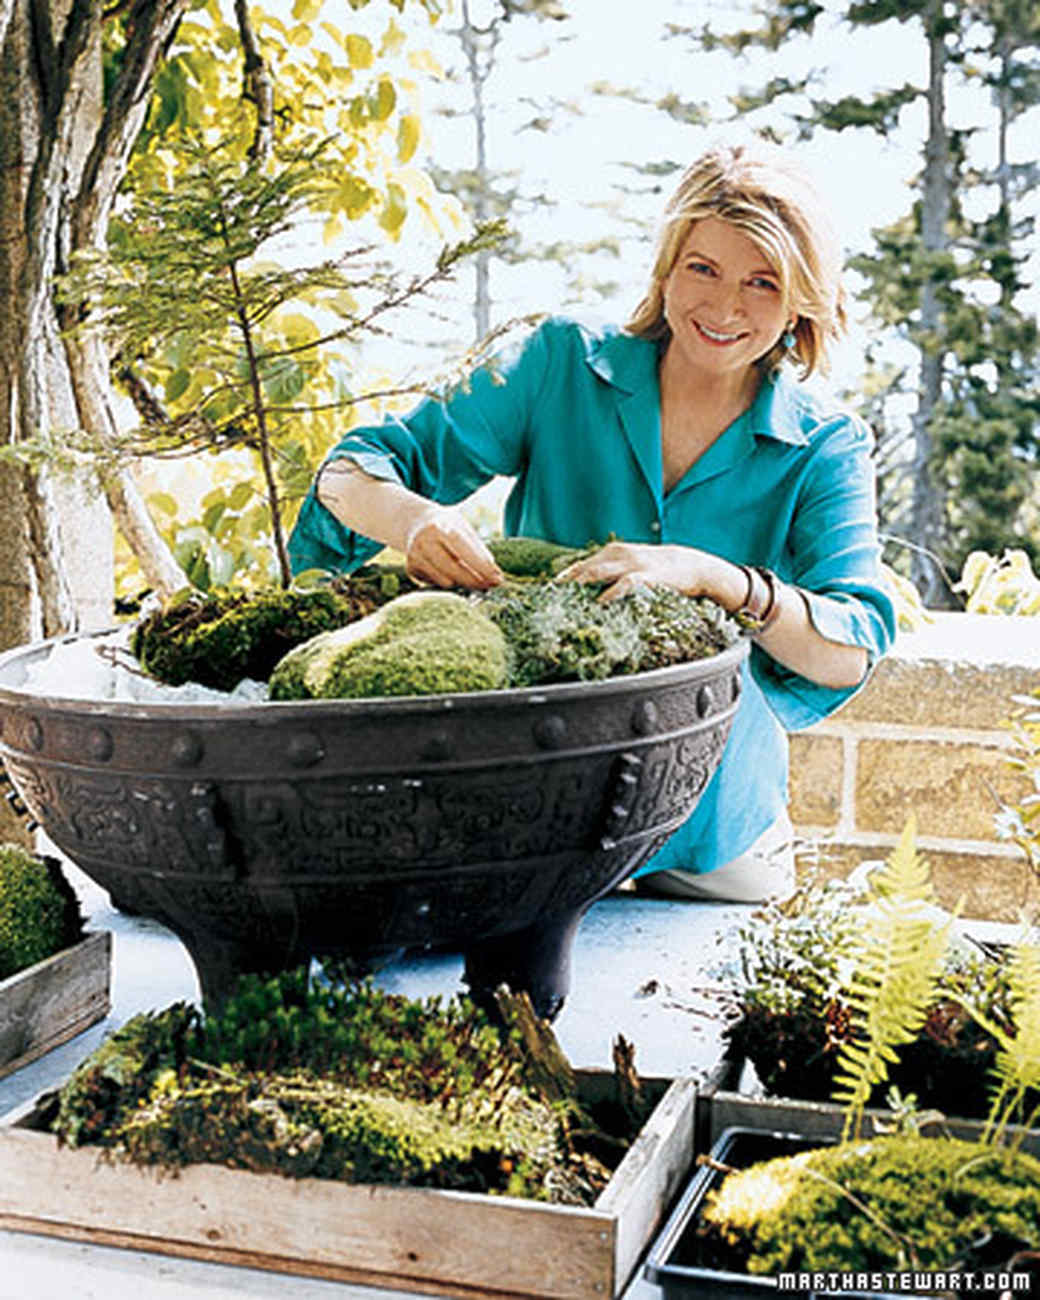 60 Great Ideas for the Garden | Martha Stewart